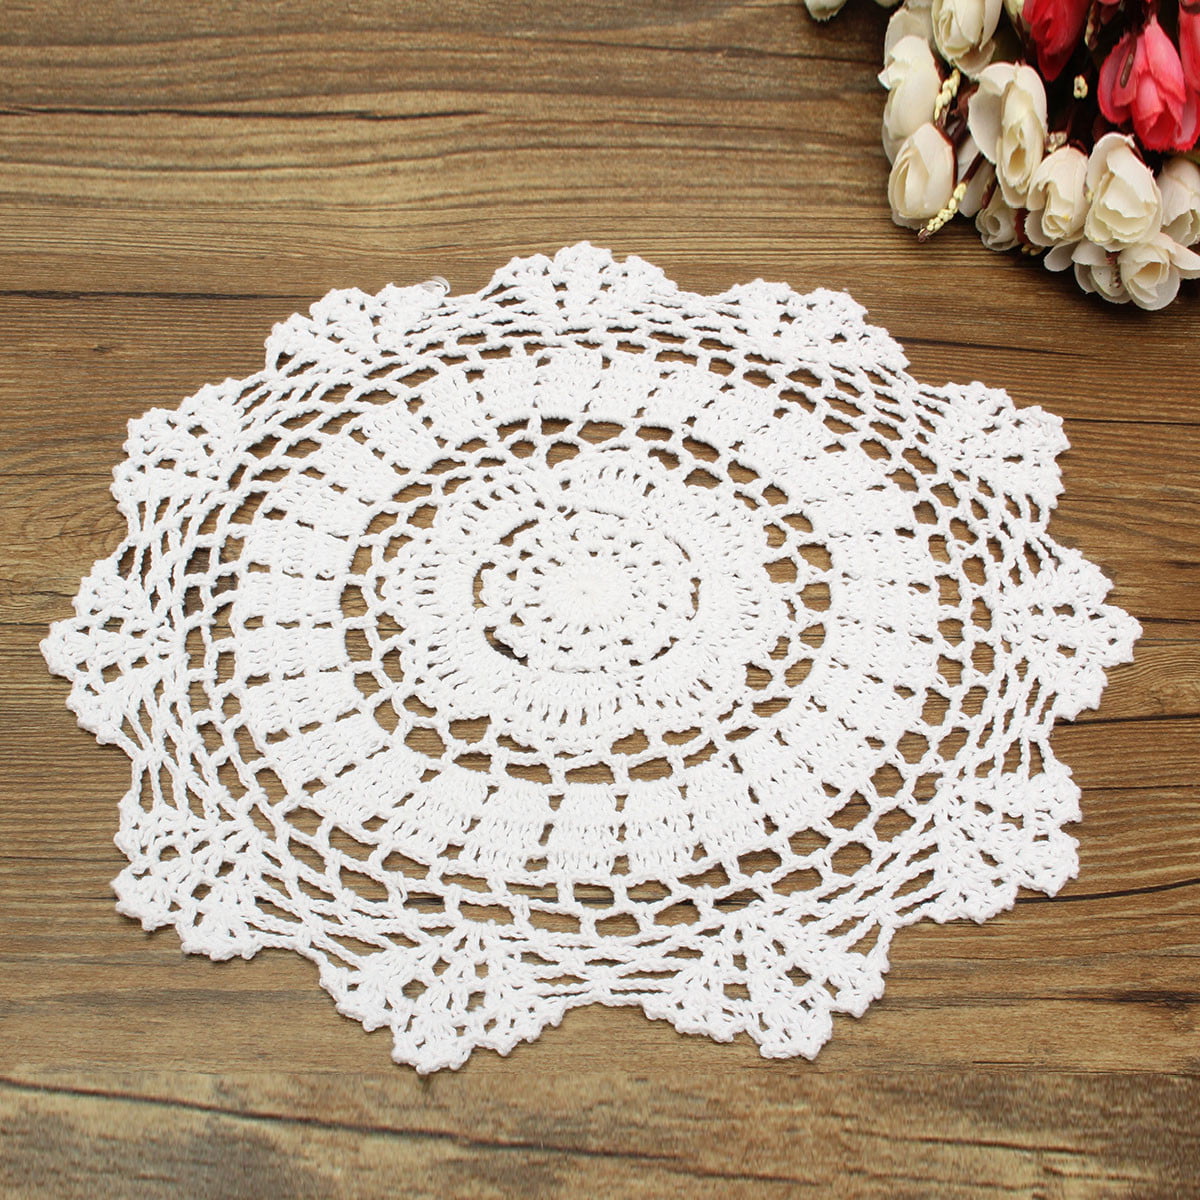 Vintage Floral Hand Crochet Cotton Lace Doily Round Flower Table Placemat Mat 